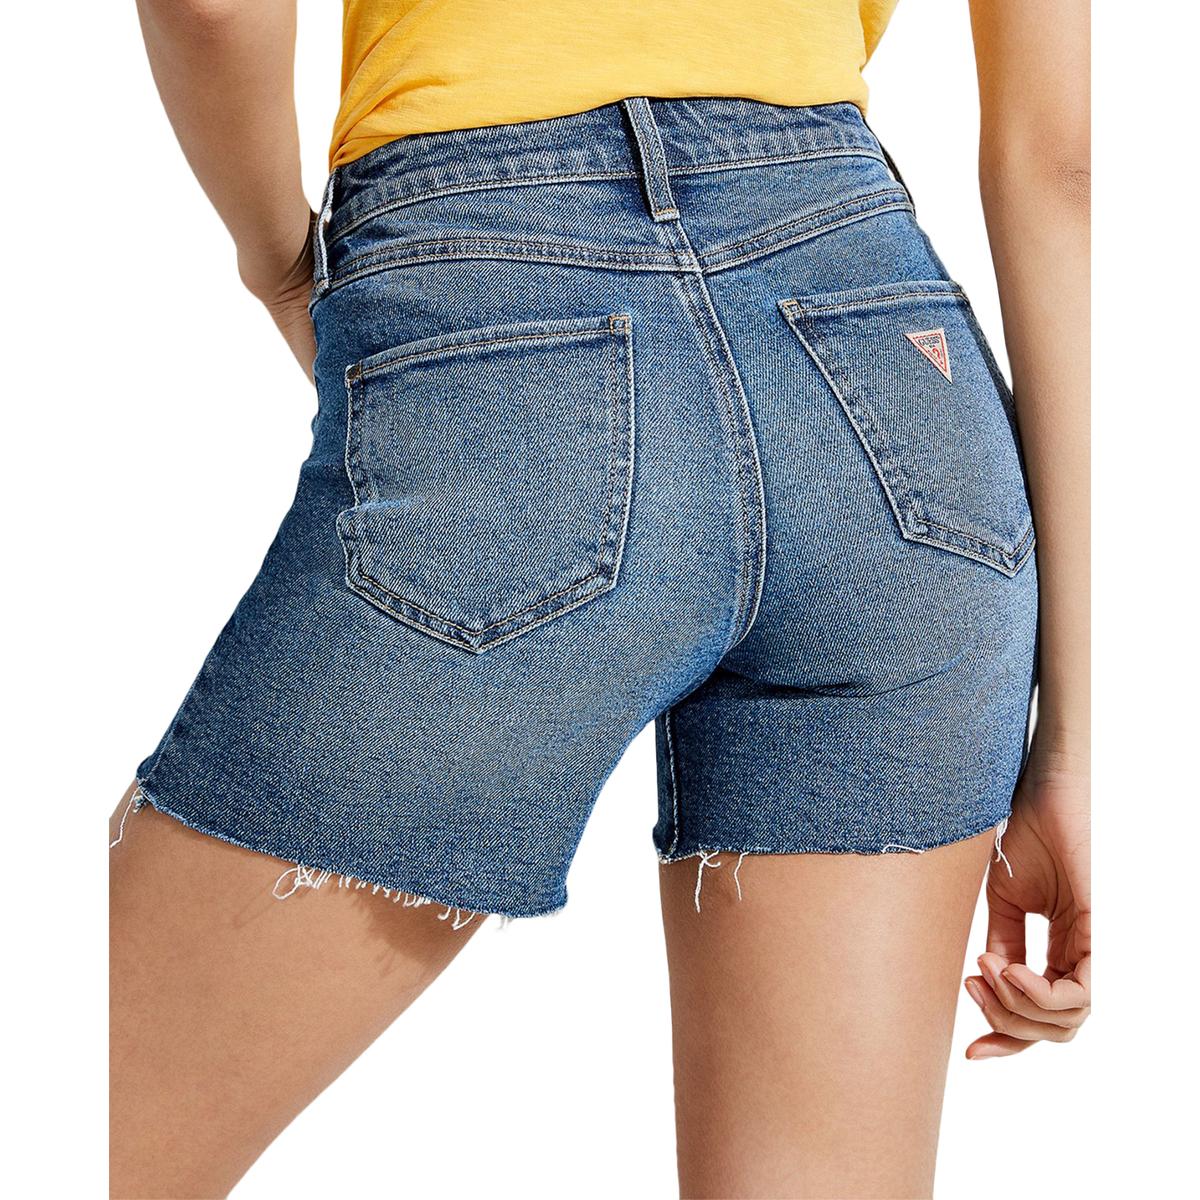 Guess Womens Midi Blue Denim Cutoff Casual Denim Shorts 24 BHFO 4026 | eBay